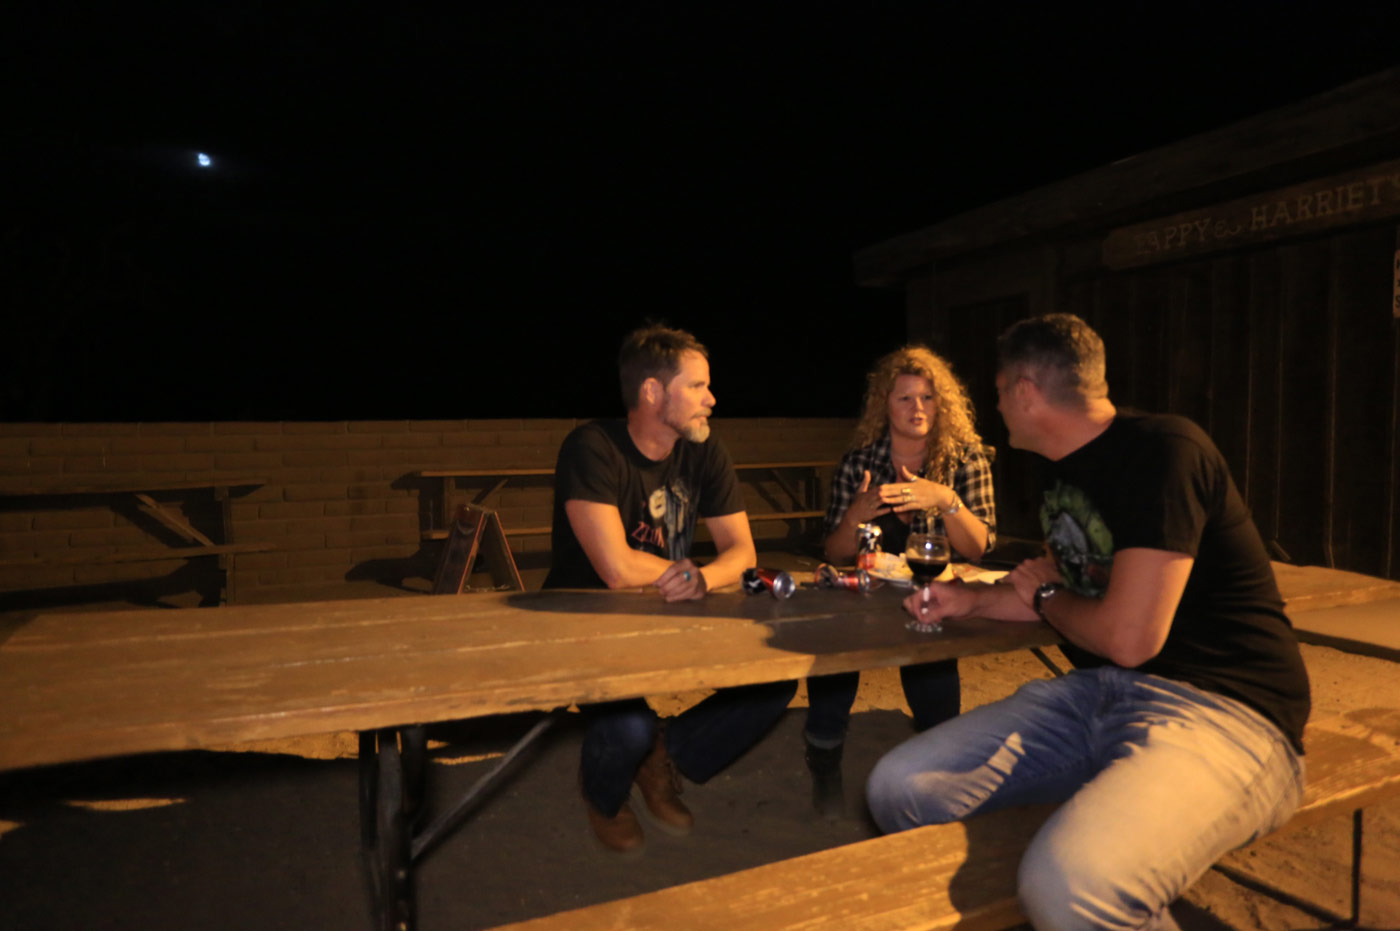 Three people talking on picnic table